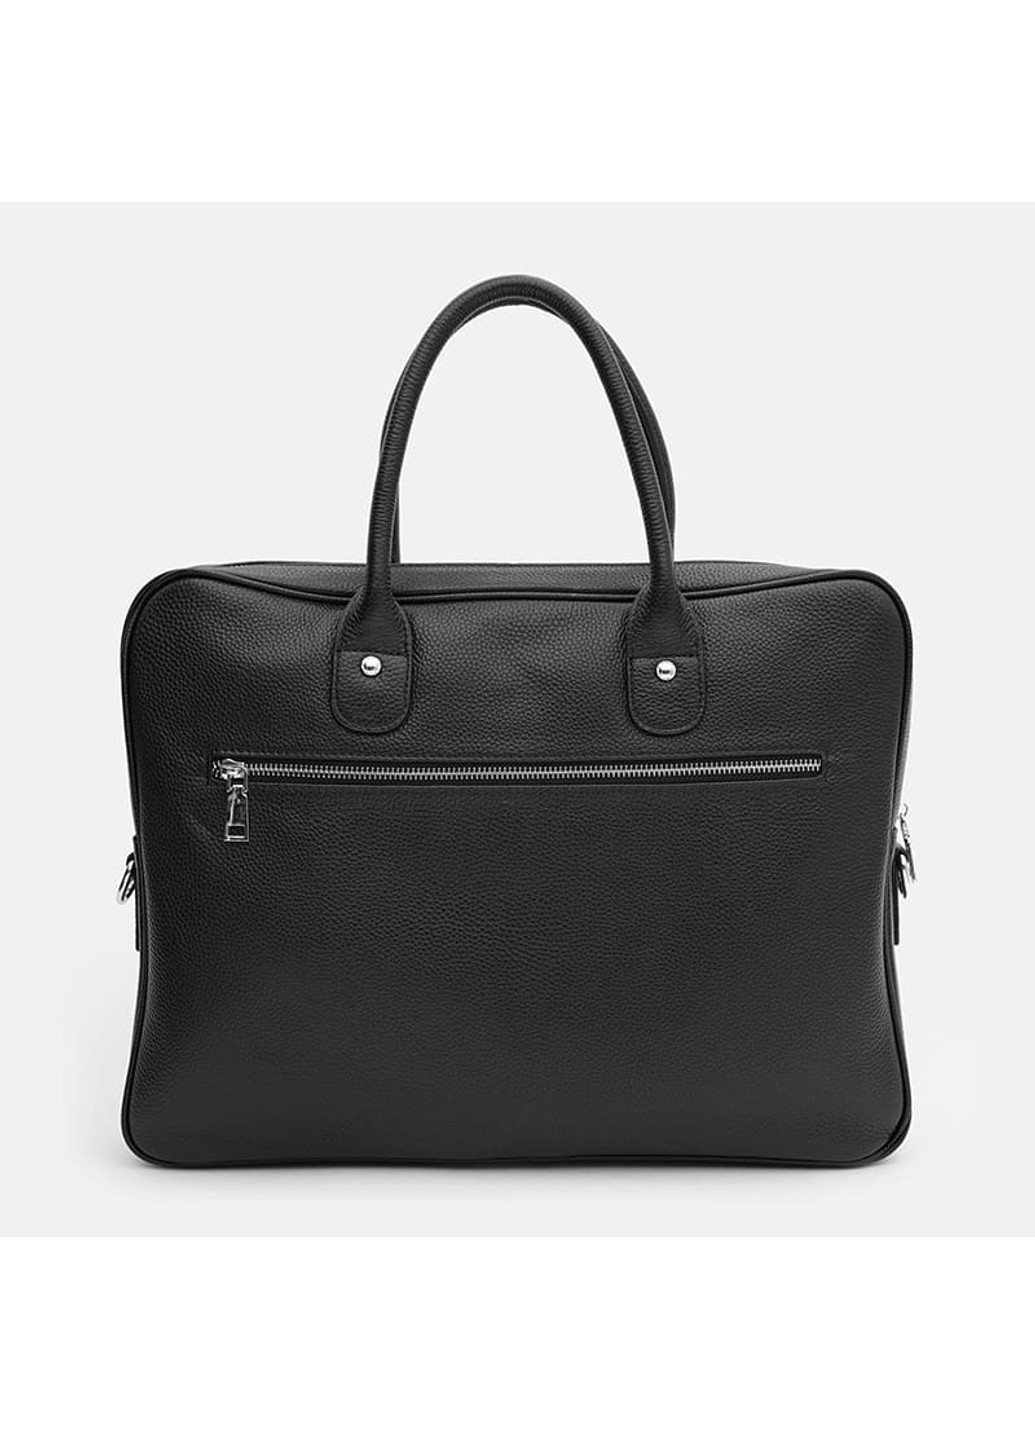 Мужская кожаная сумка K117611bl-black Borsa Leather (266143392)